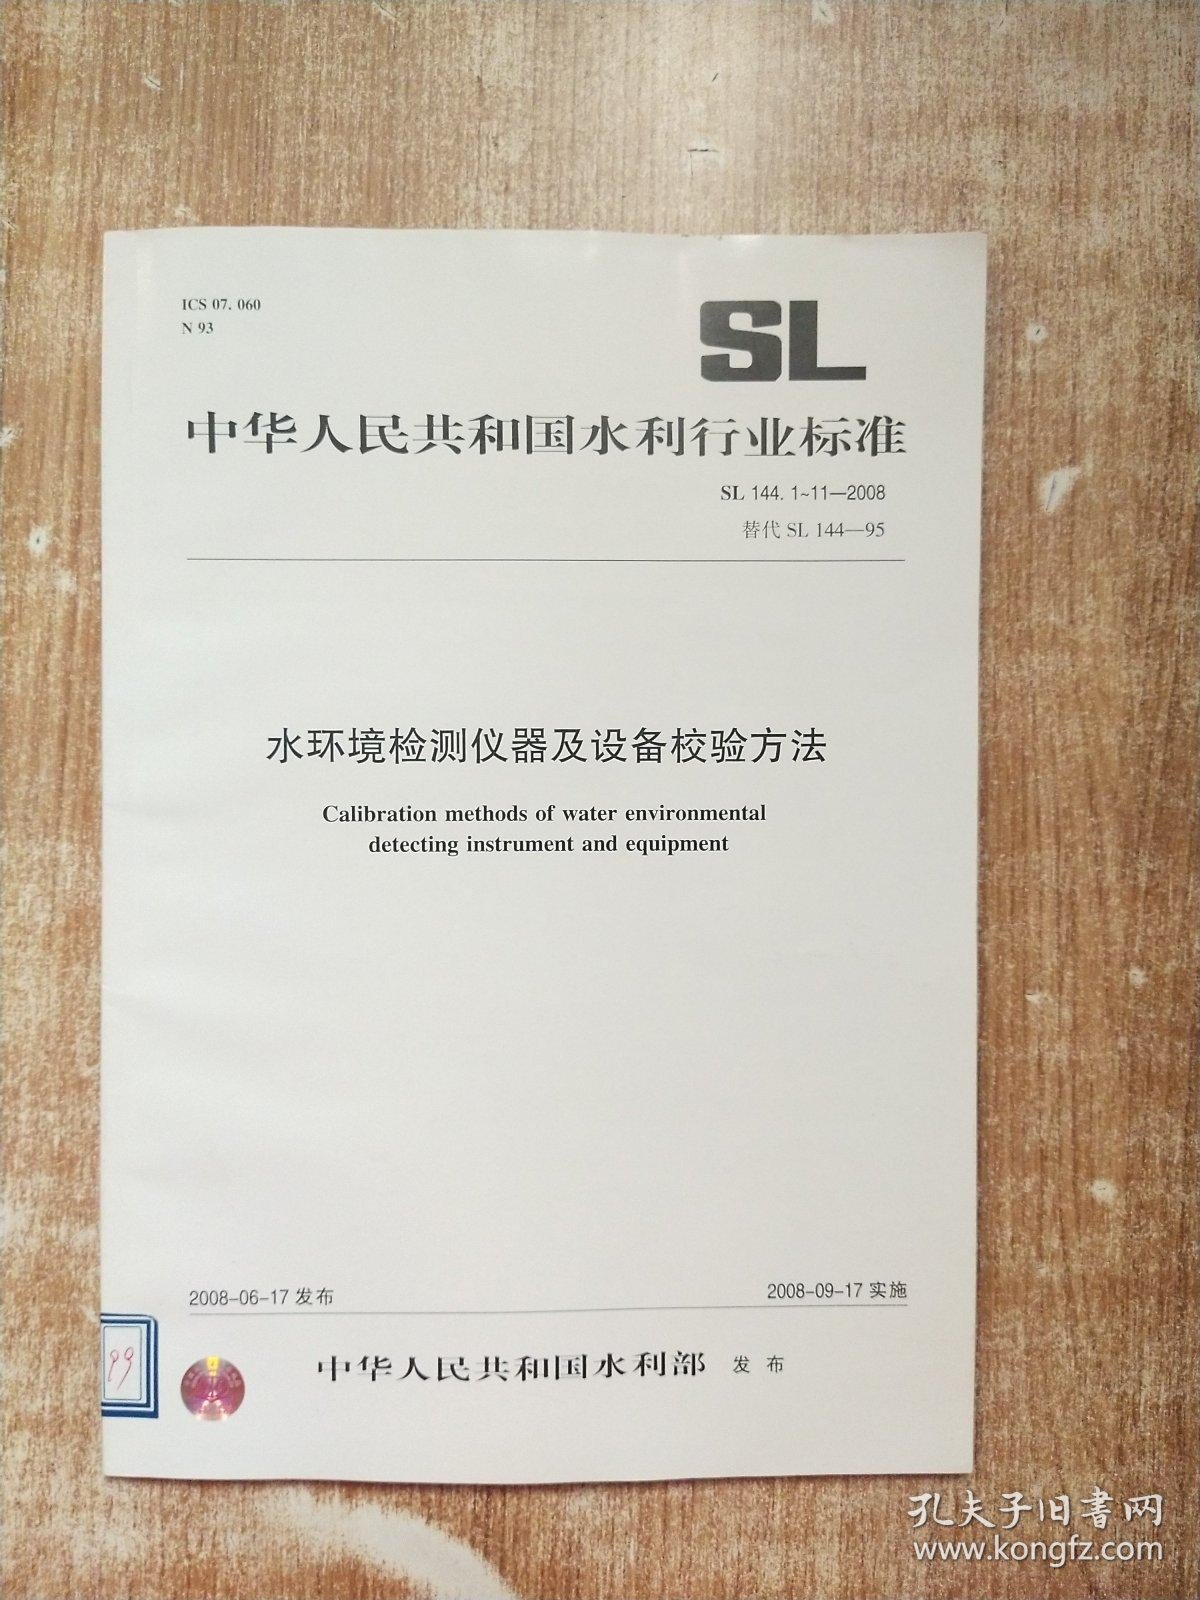 中华人民共和国水利行业标准：SL 144 1-11-2008 水环境监测仪器及设备校验方法